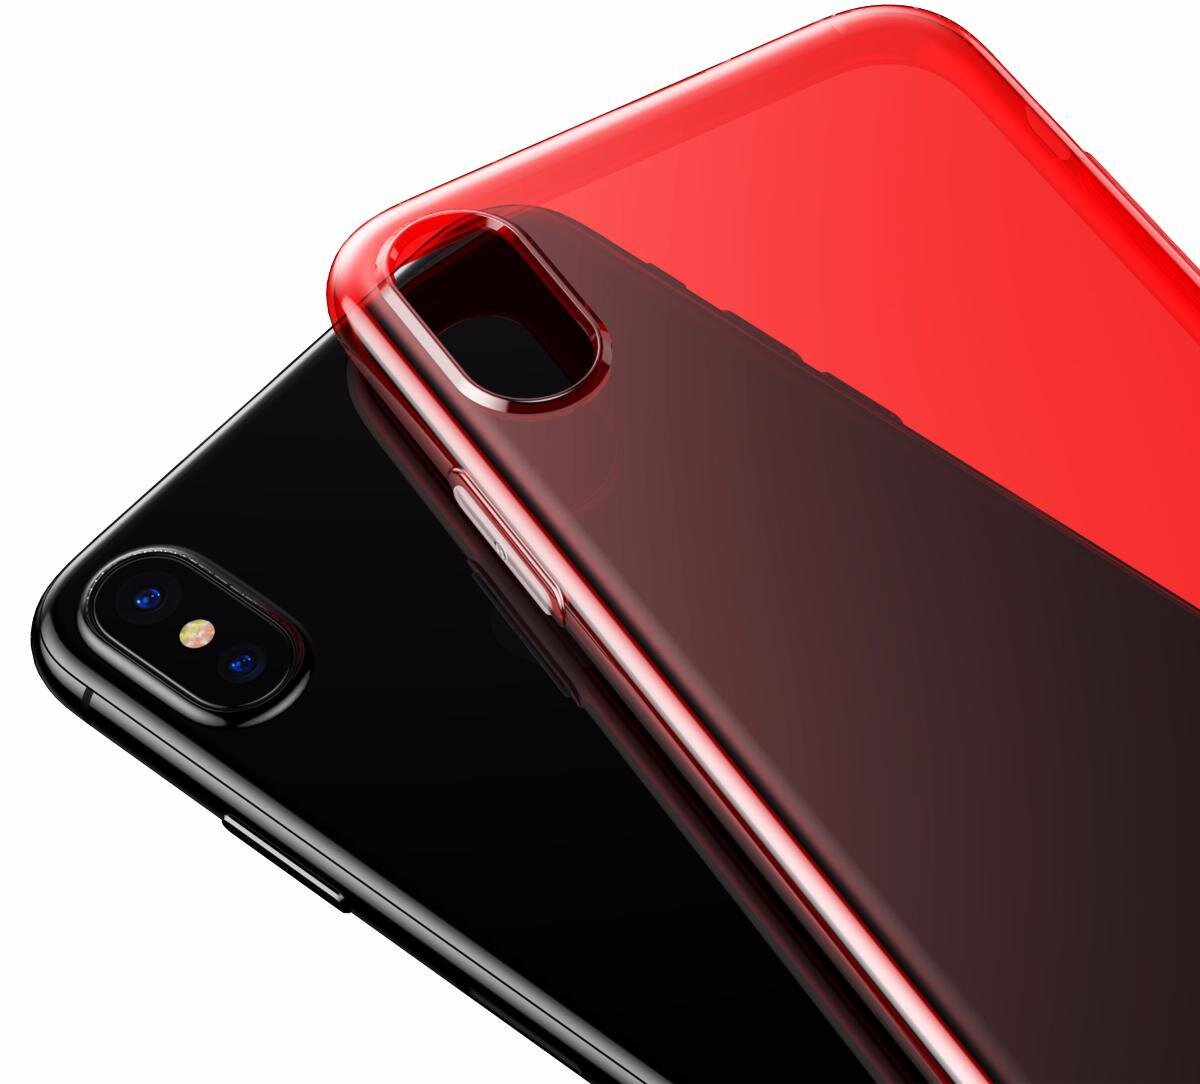 Чехол Baseus для Apple iPhone X Simple Series, Transparent Red (ARAPIPHX-B09): продажа, цена в Киеве. чехлы для телефонов, mp3 плееров от 